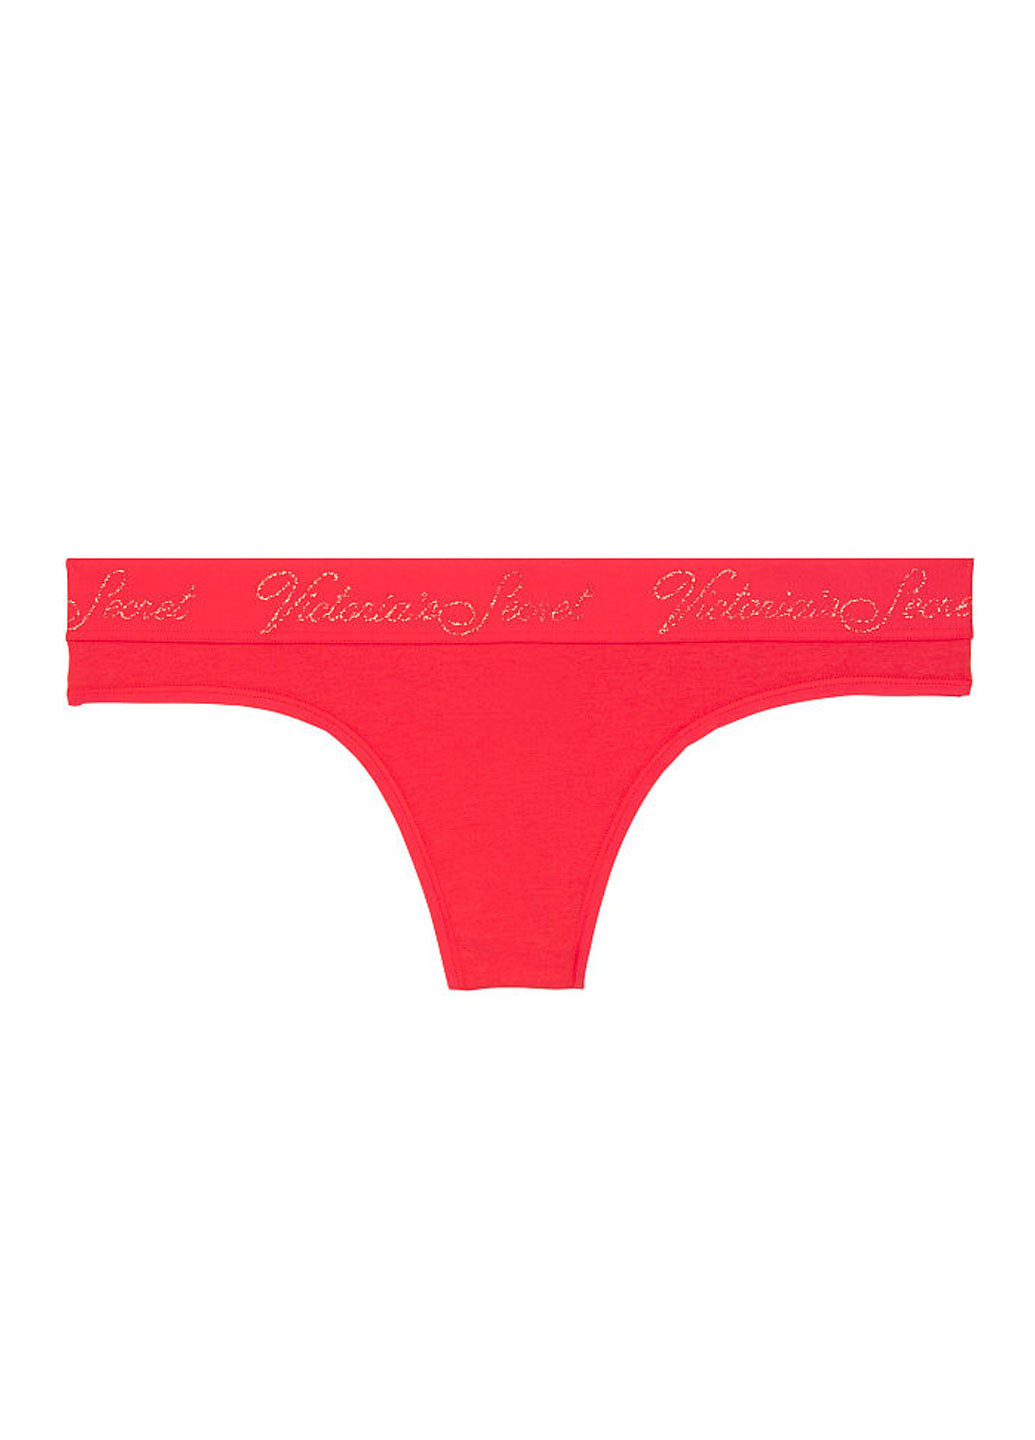 Трусики Victoria's Secret стринги логотипы красные повседневные хлопок